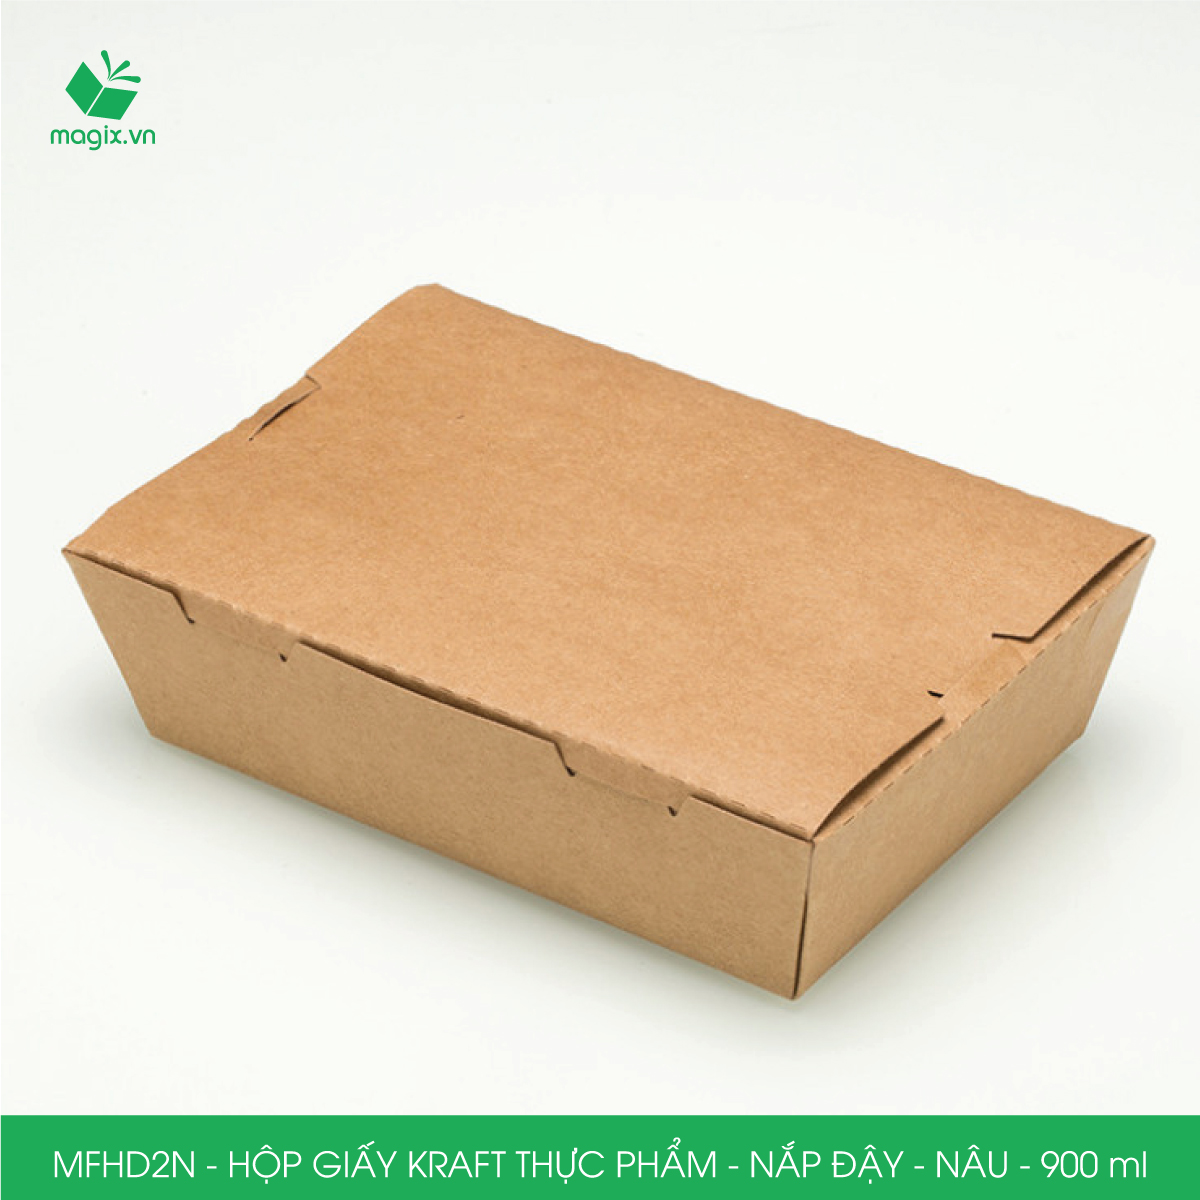 MFHD2N - Combo 100 hộp giấy kraft thực phẩm 900ml, hộp đựng thức ăn nắp đậy màu nâu, hộp gói đồ ăn mang đi